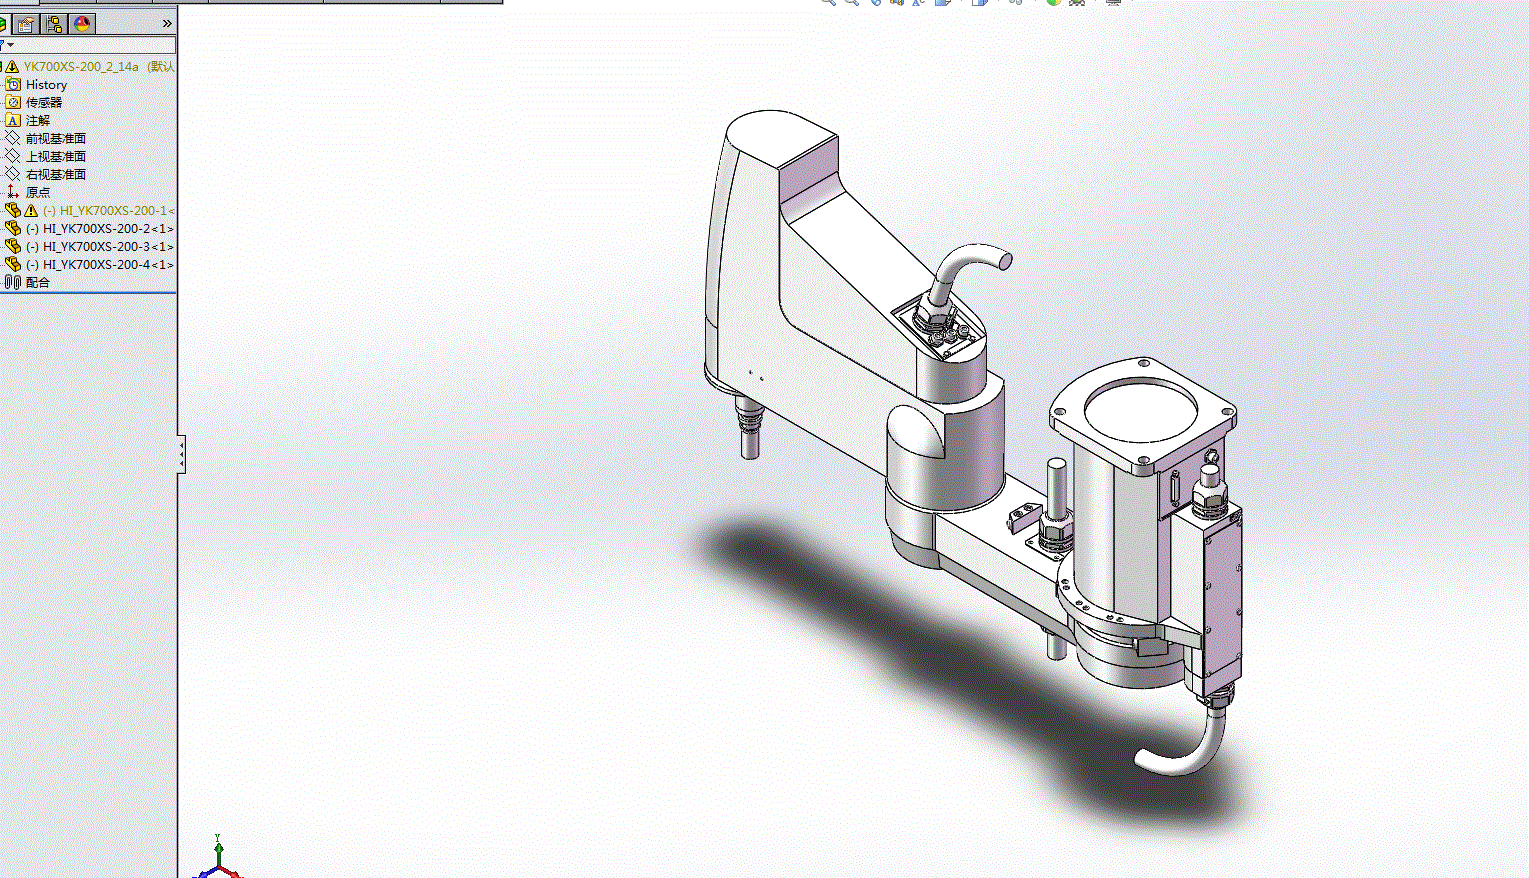 雅马哈四轴机械手3D模型YK700XS-200_2_14a.zip